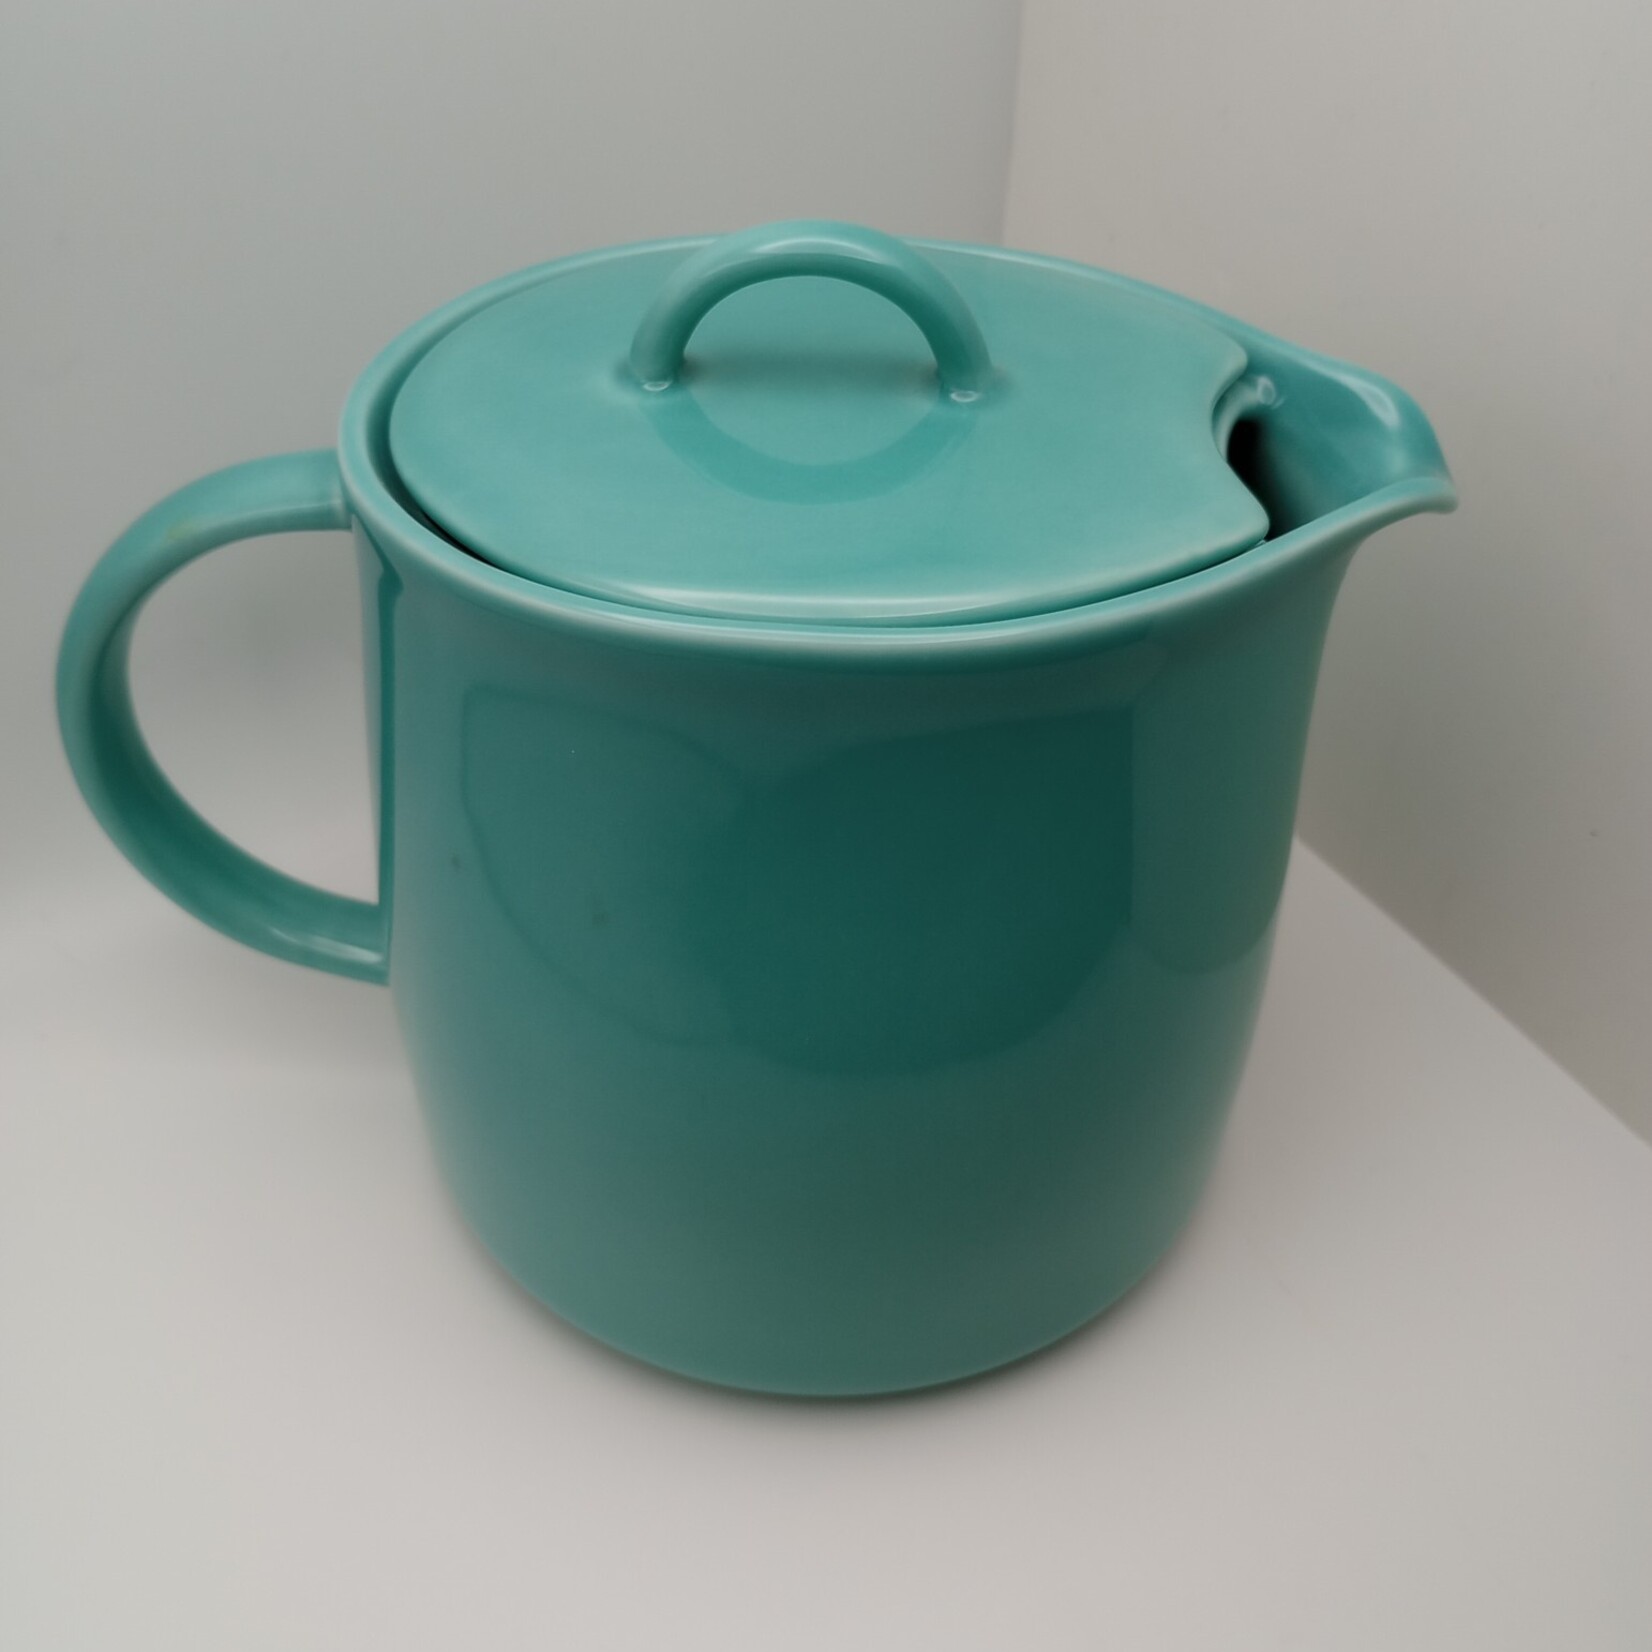 D’Anjou Tea Pot with Infuser